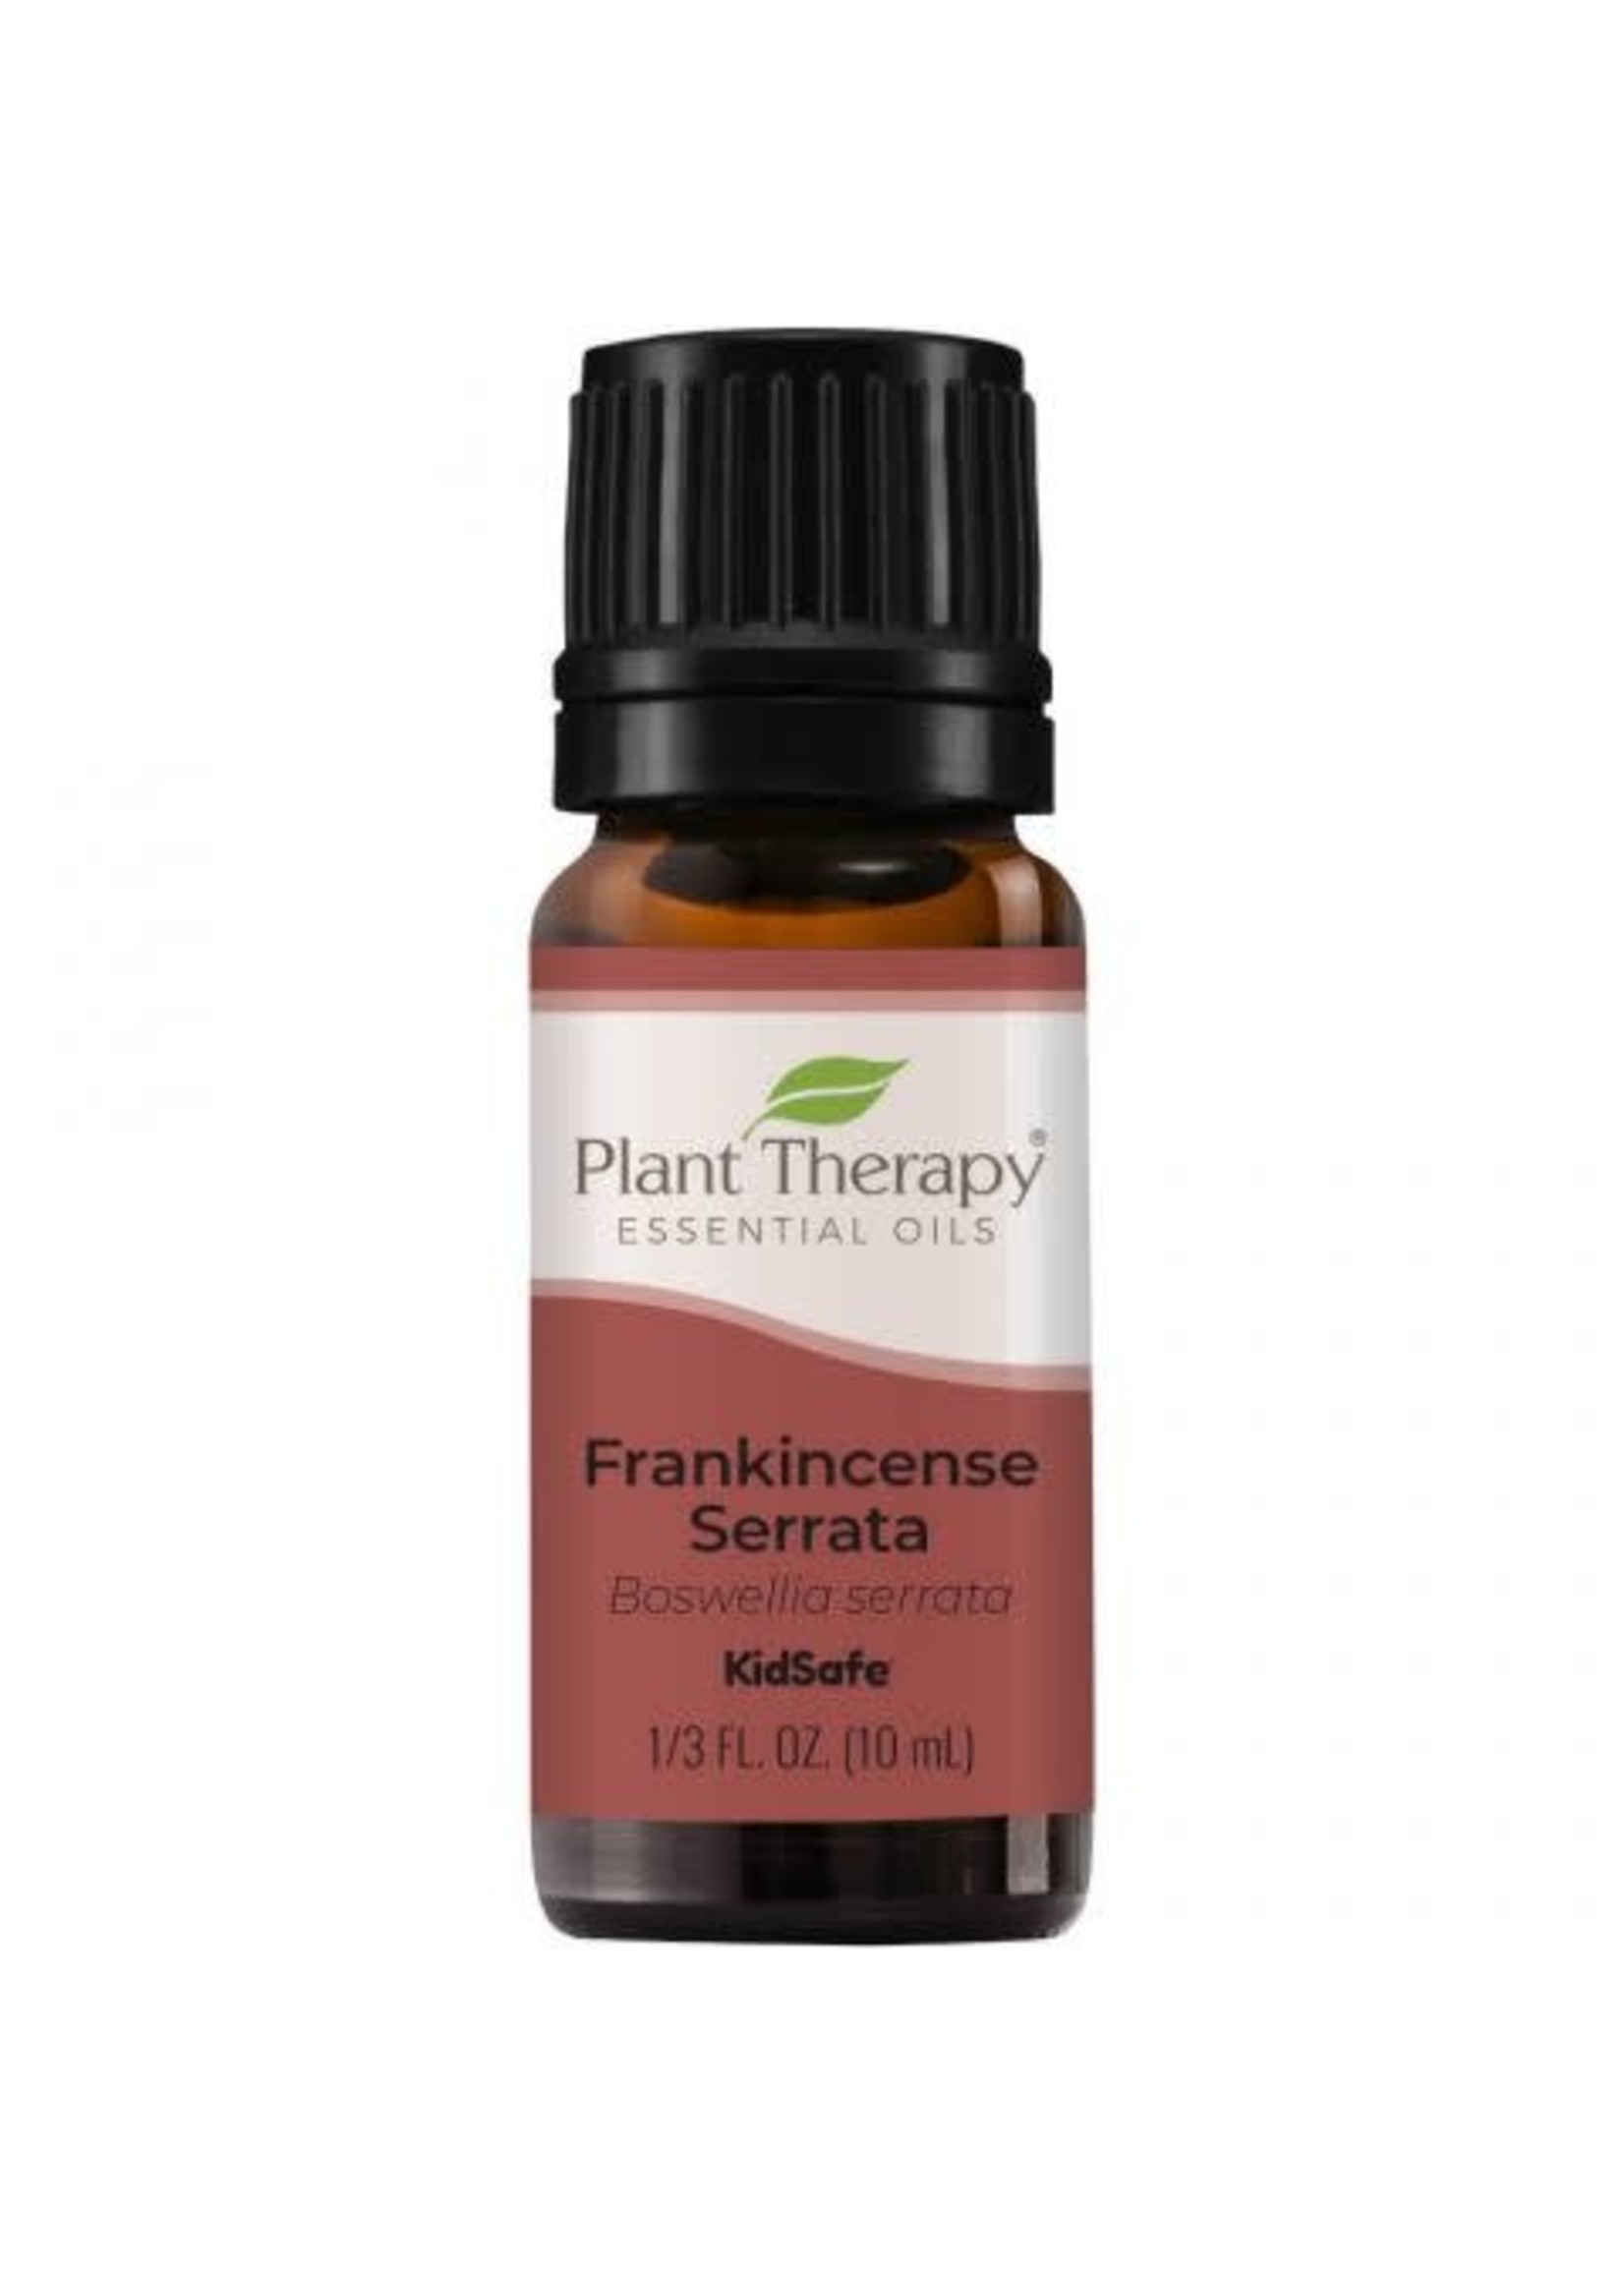 Plant Therapy Essential Oil Single - Frankincense Serrata